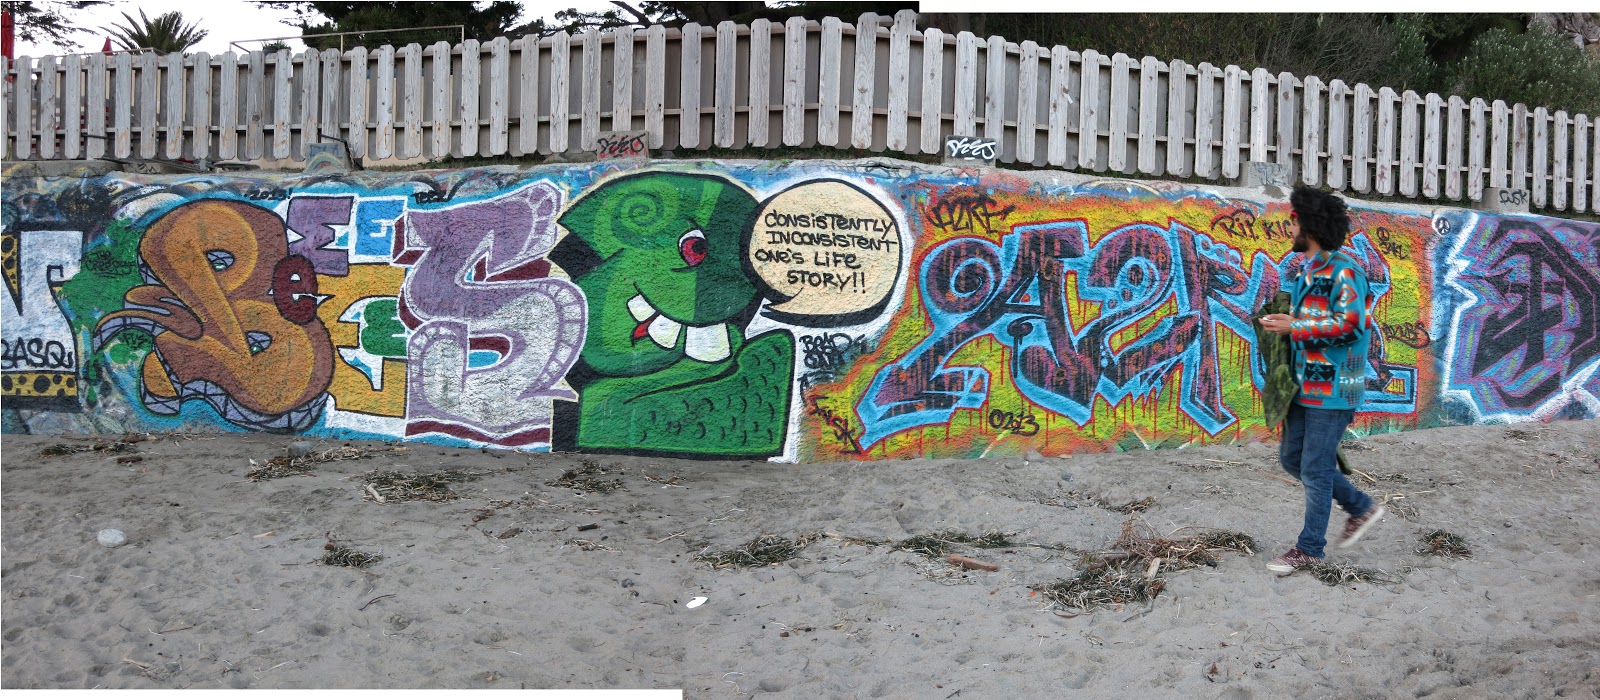 Anset2000 Blog Amazing Graffiti Of Shoreditch London